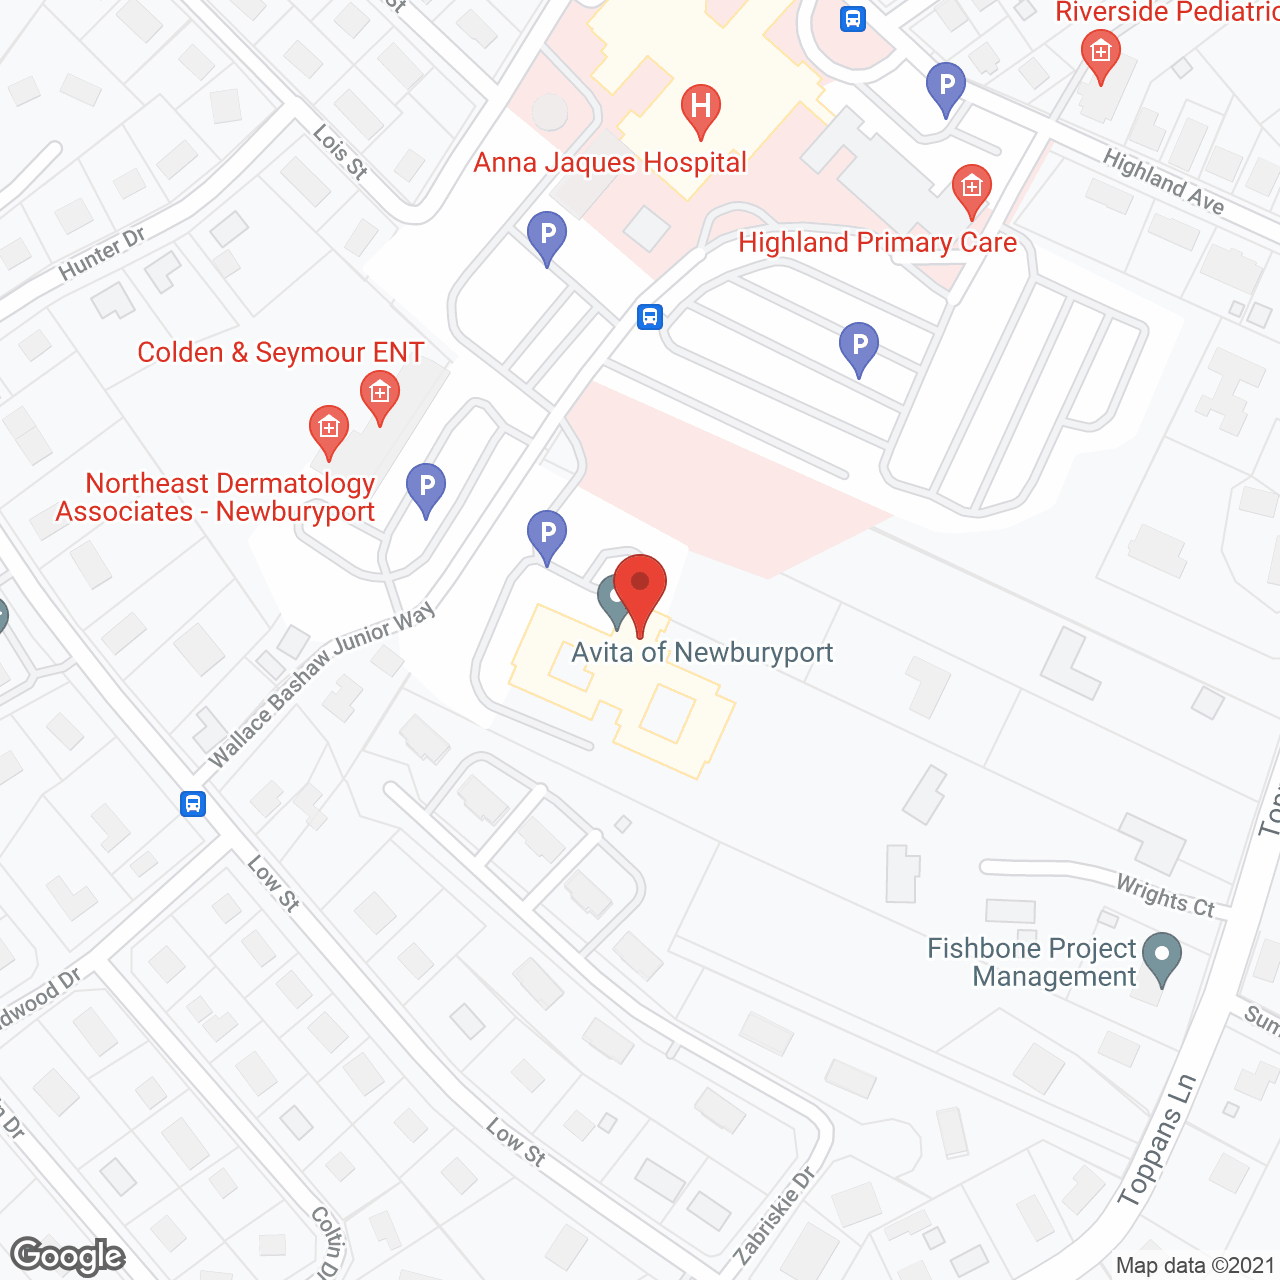 Avita of Newburyport in google map